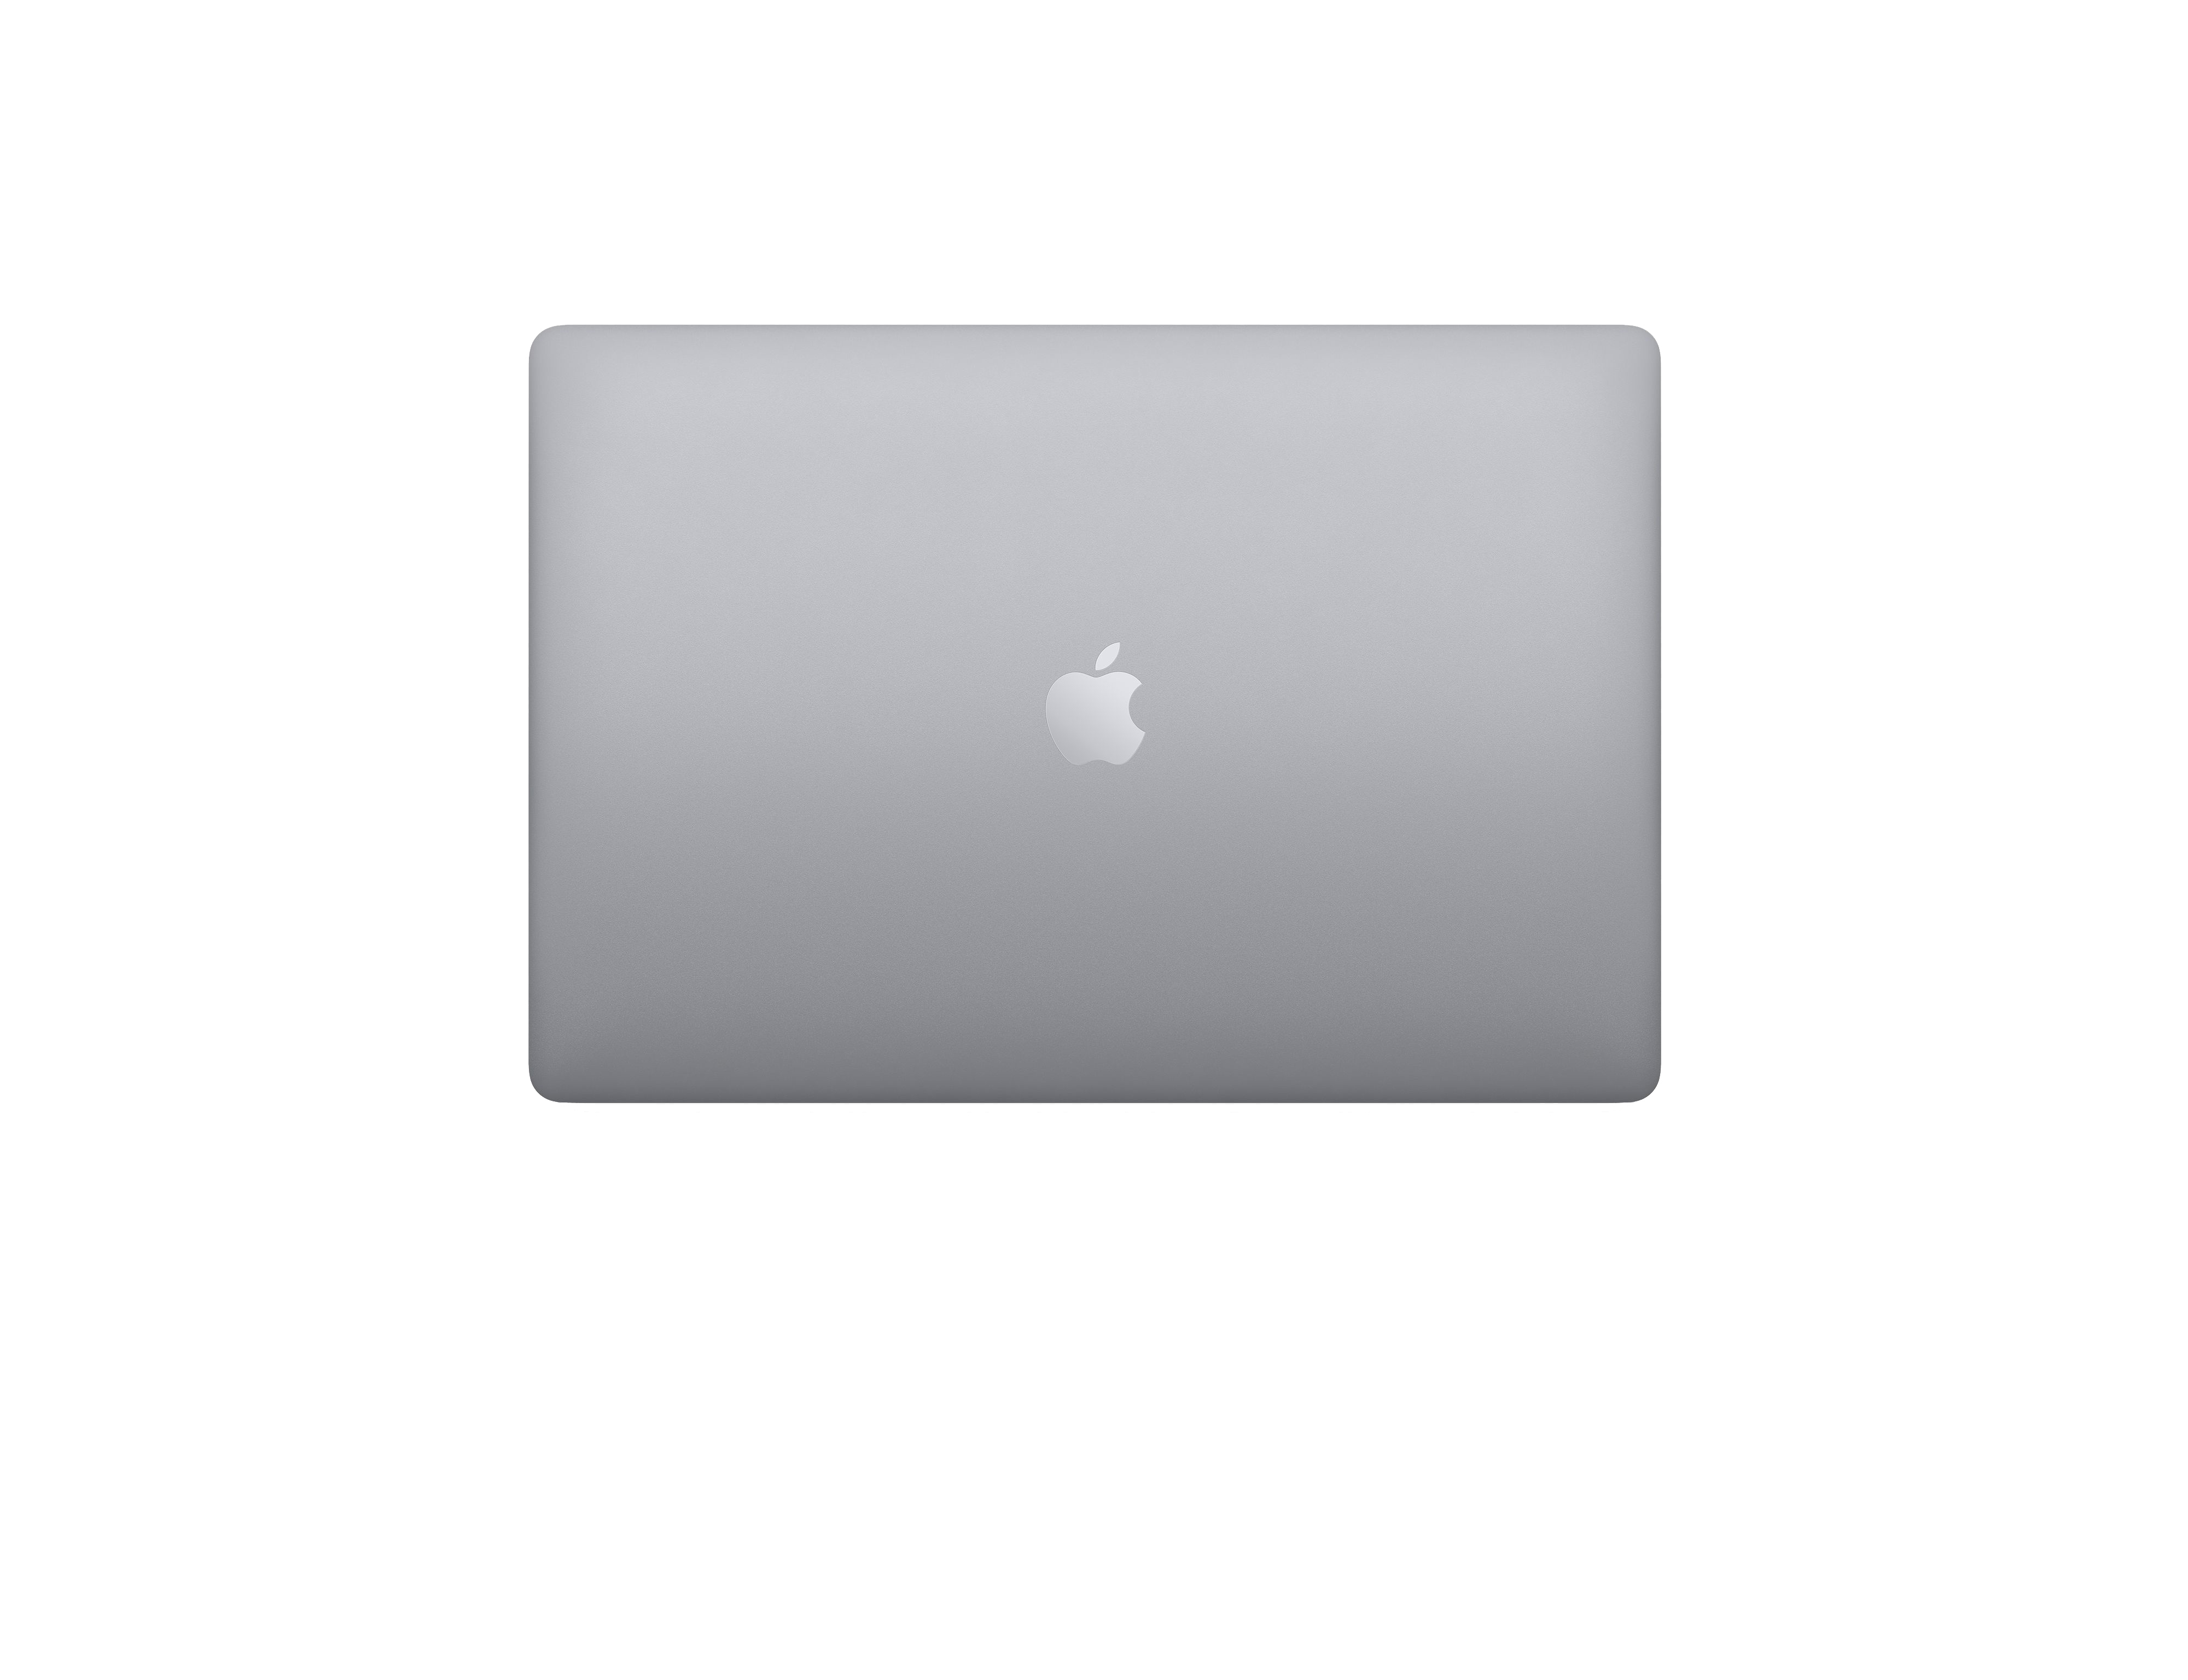 Macbook Pro 16 inch 2019 Gray (MVVK2) - i9 2.3/ 32GB/ 1T /8GB VGA - Likenew